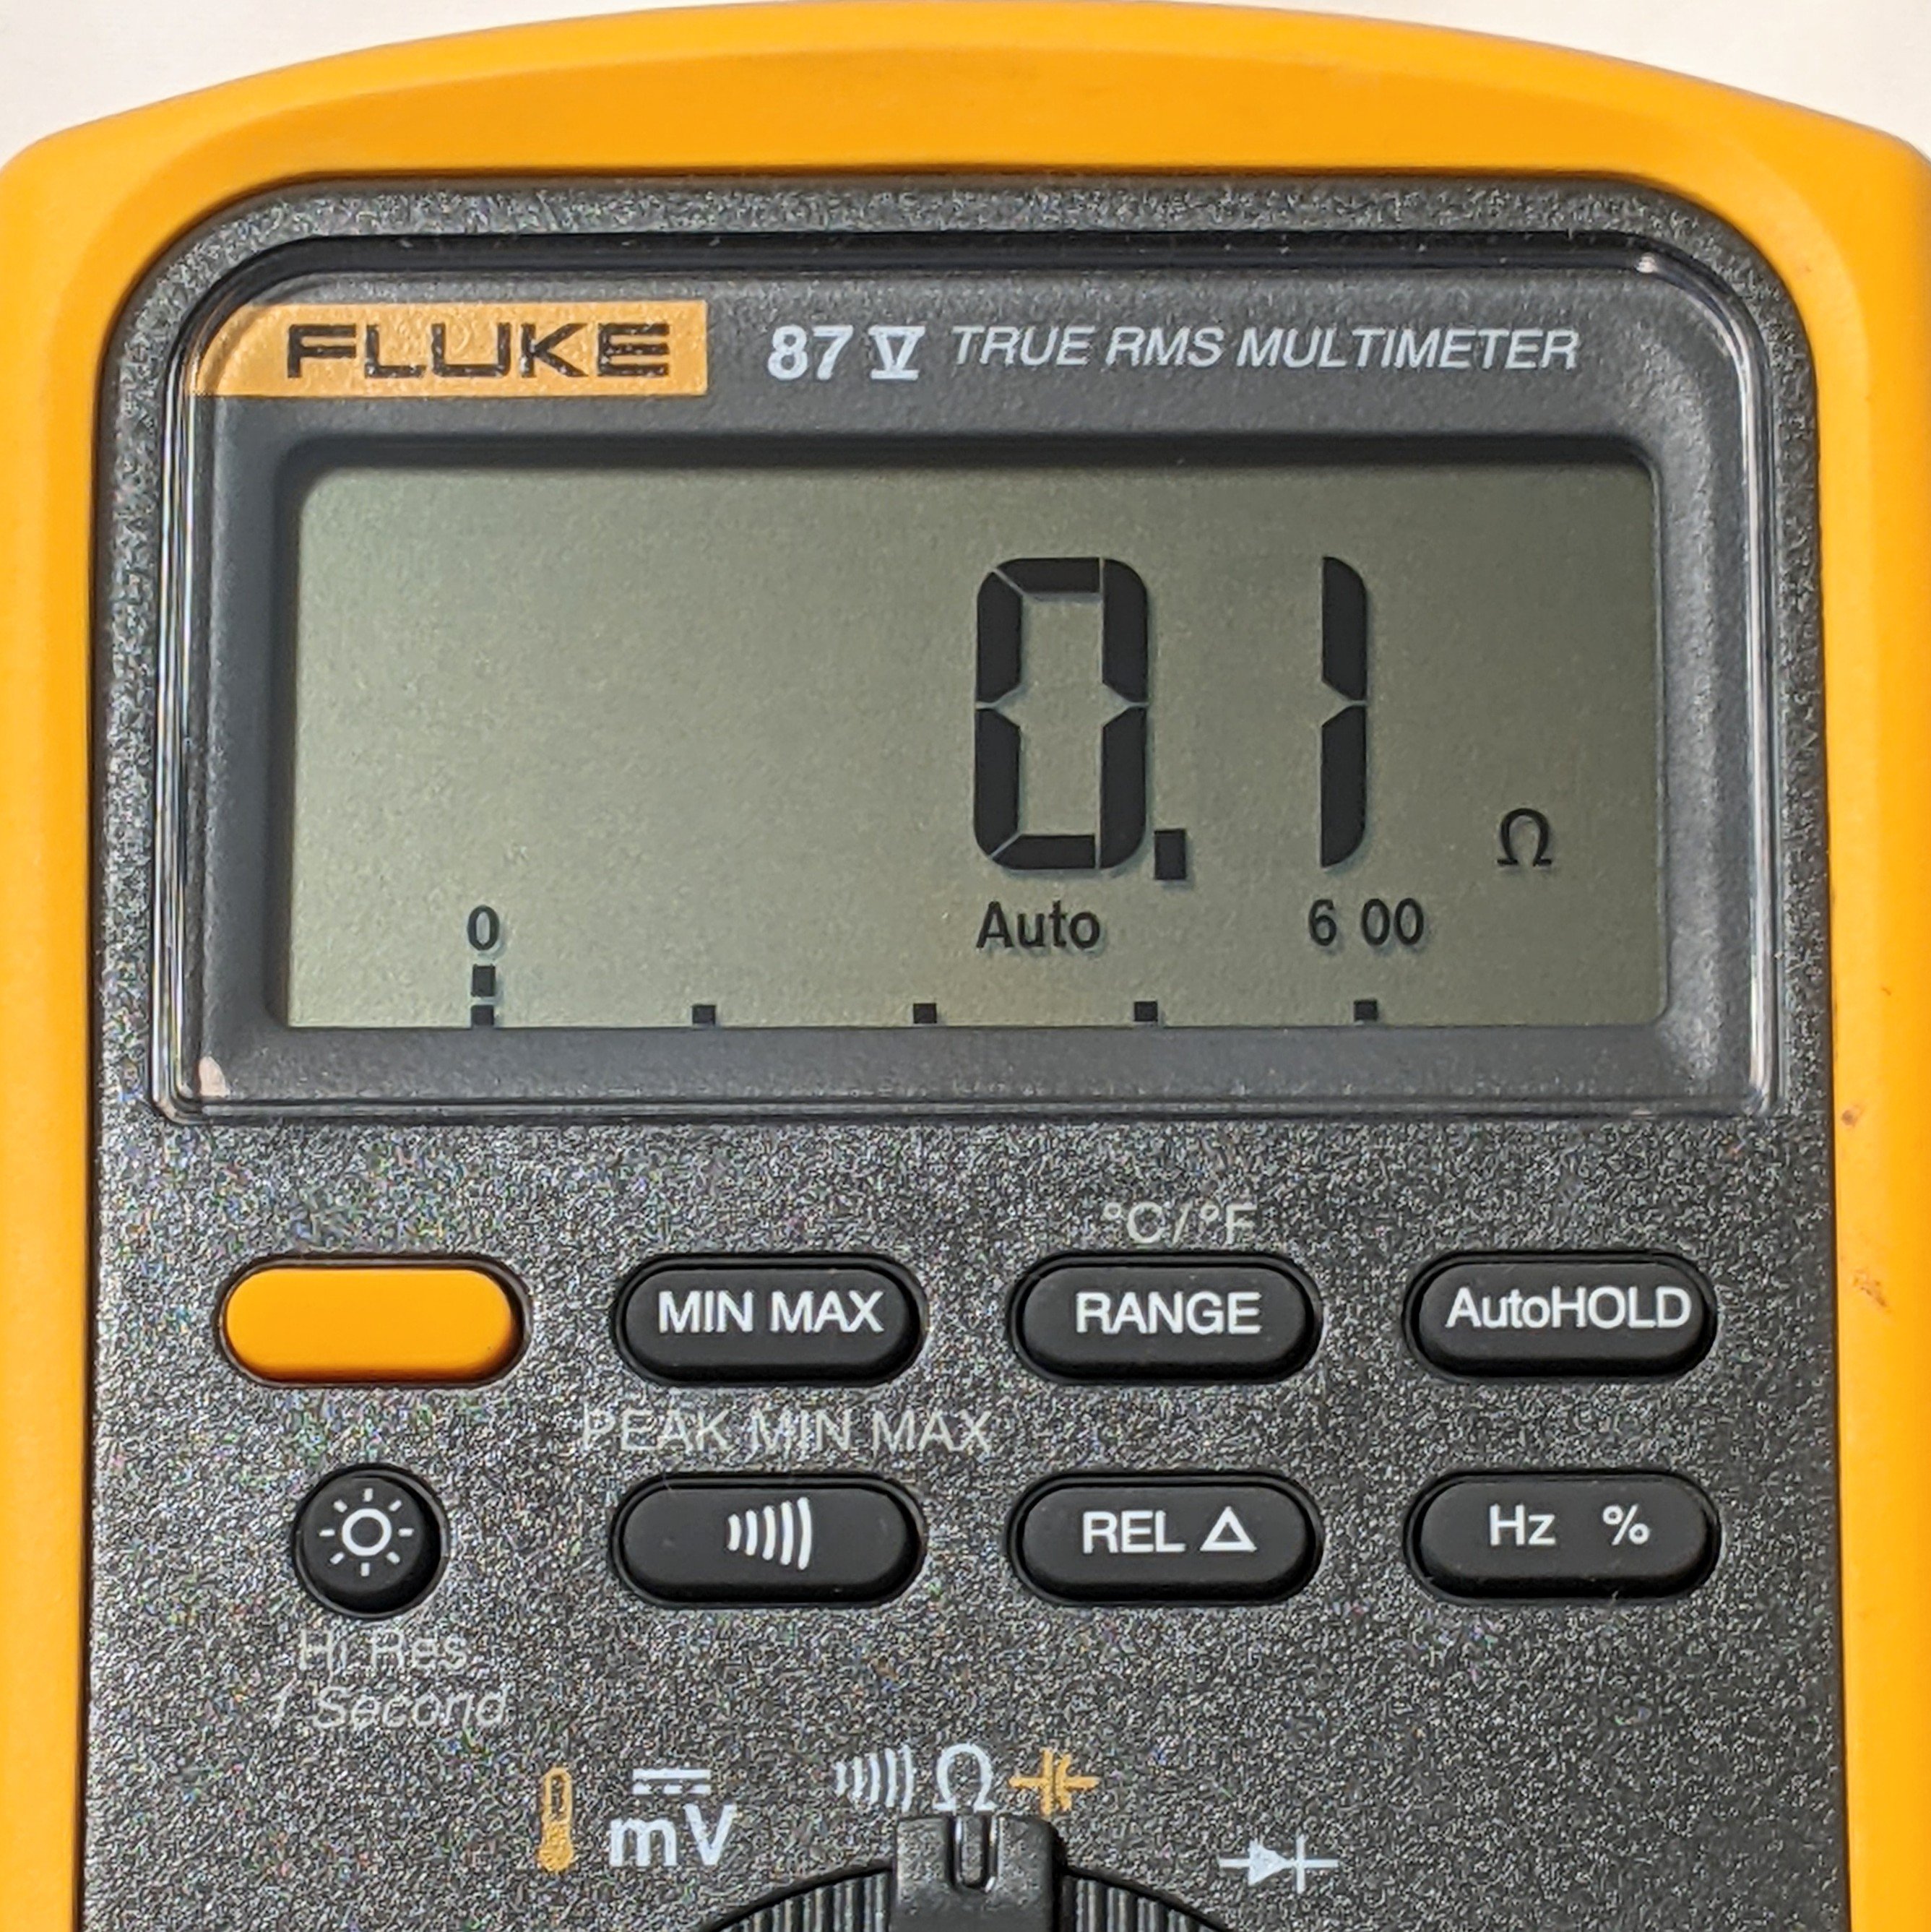 Bezpečnostní upozornění k multimetrům Fluke řady 8xV – Naměření odpovídajících hodnot odporu